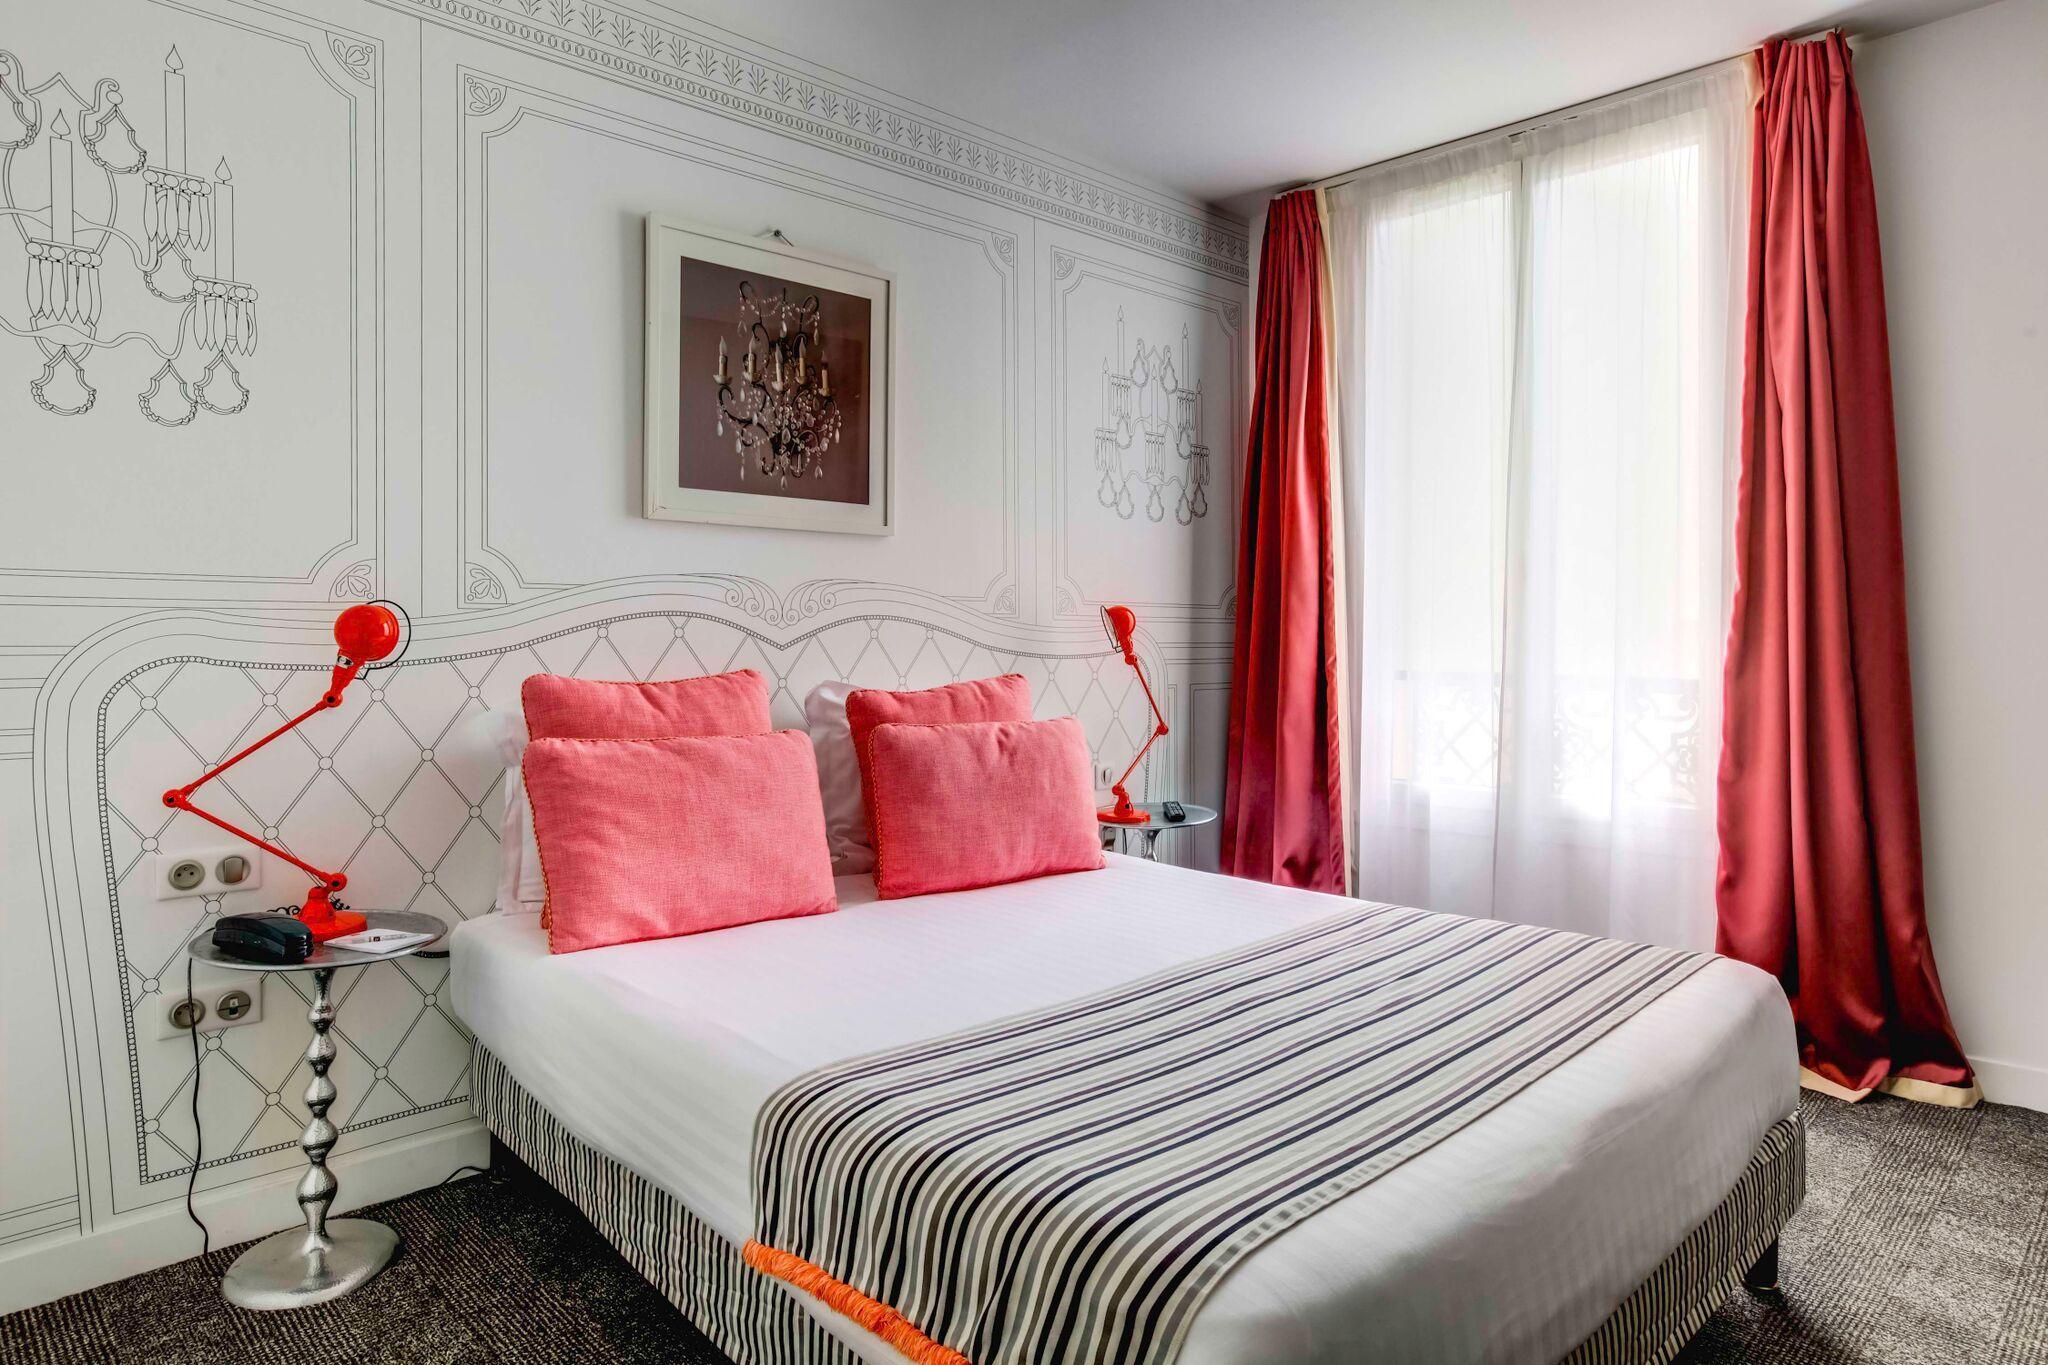 Hôtel Joyce - Astotel - Évaluations de l'hôtel 3 étoiles à Paris